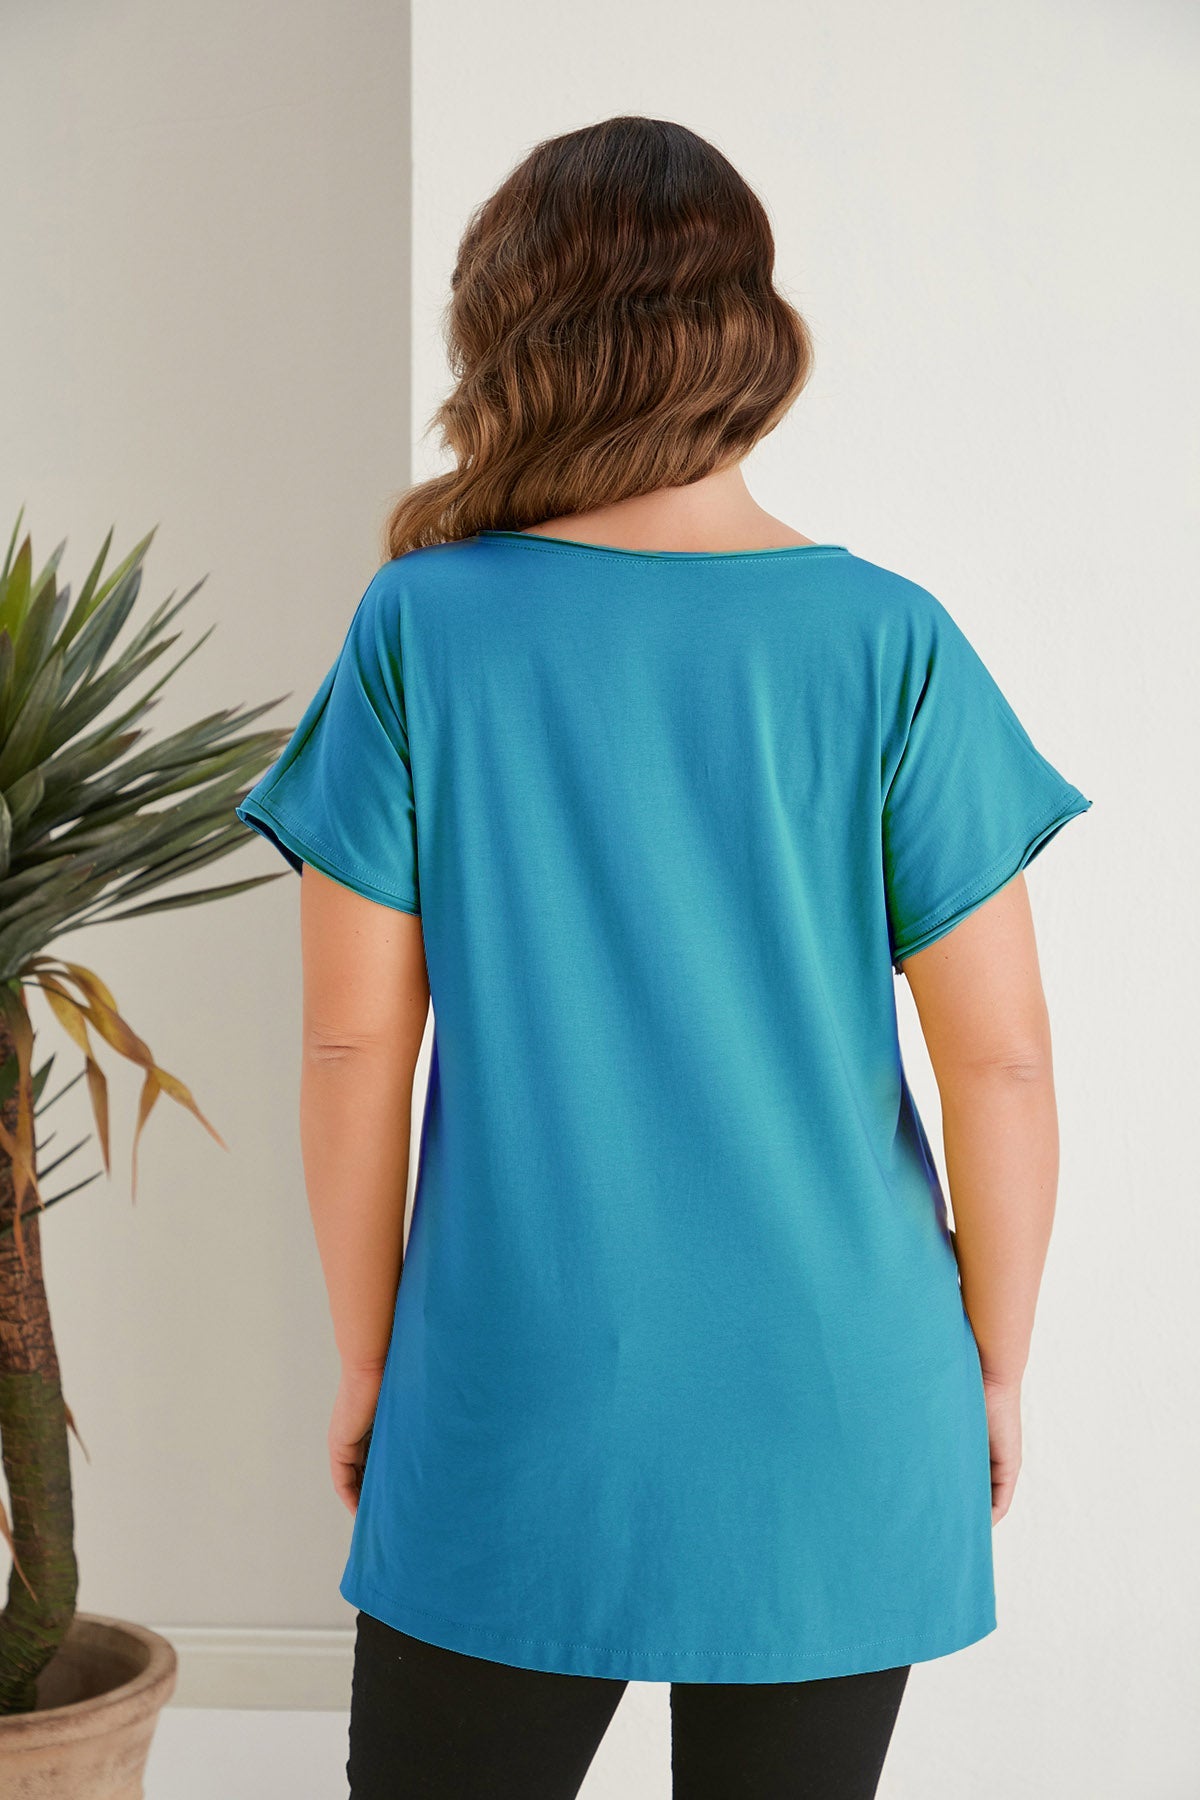 Baumwoll-Shirt mit V-Ausschnitt in großen Größen